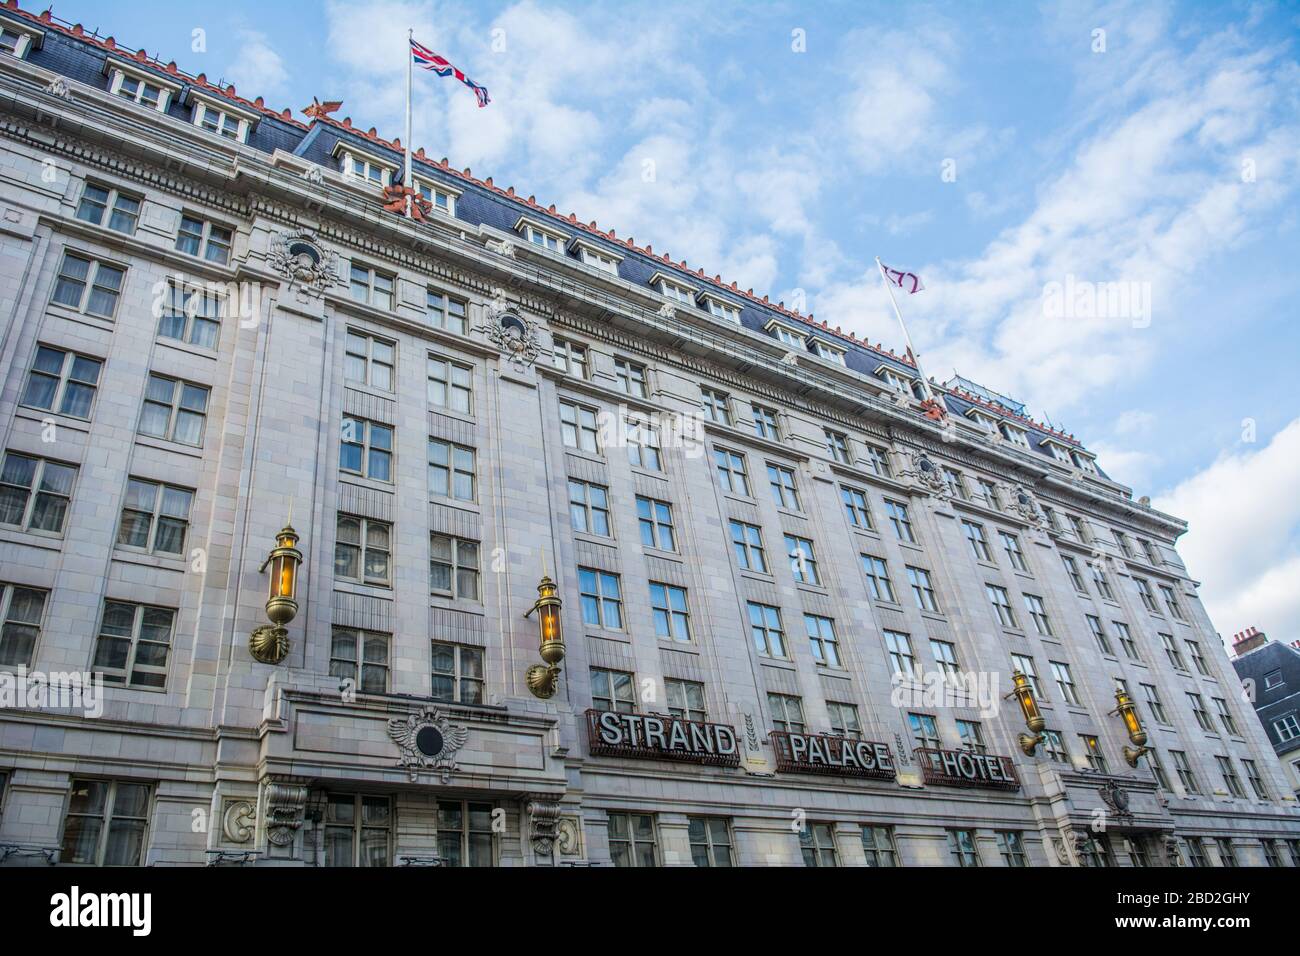 LONDRA - lo Strand Palace Hotel, un imponente hotel art deco nel cuore del West End Foto Stock